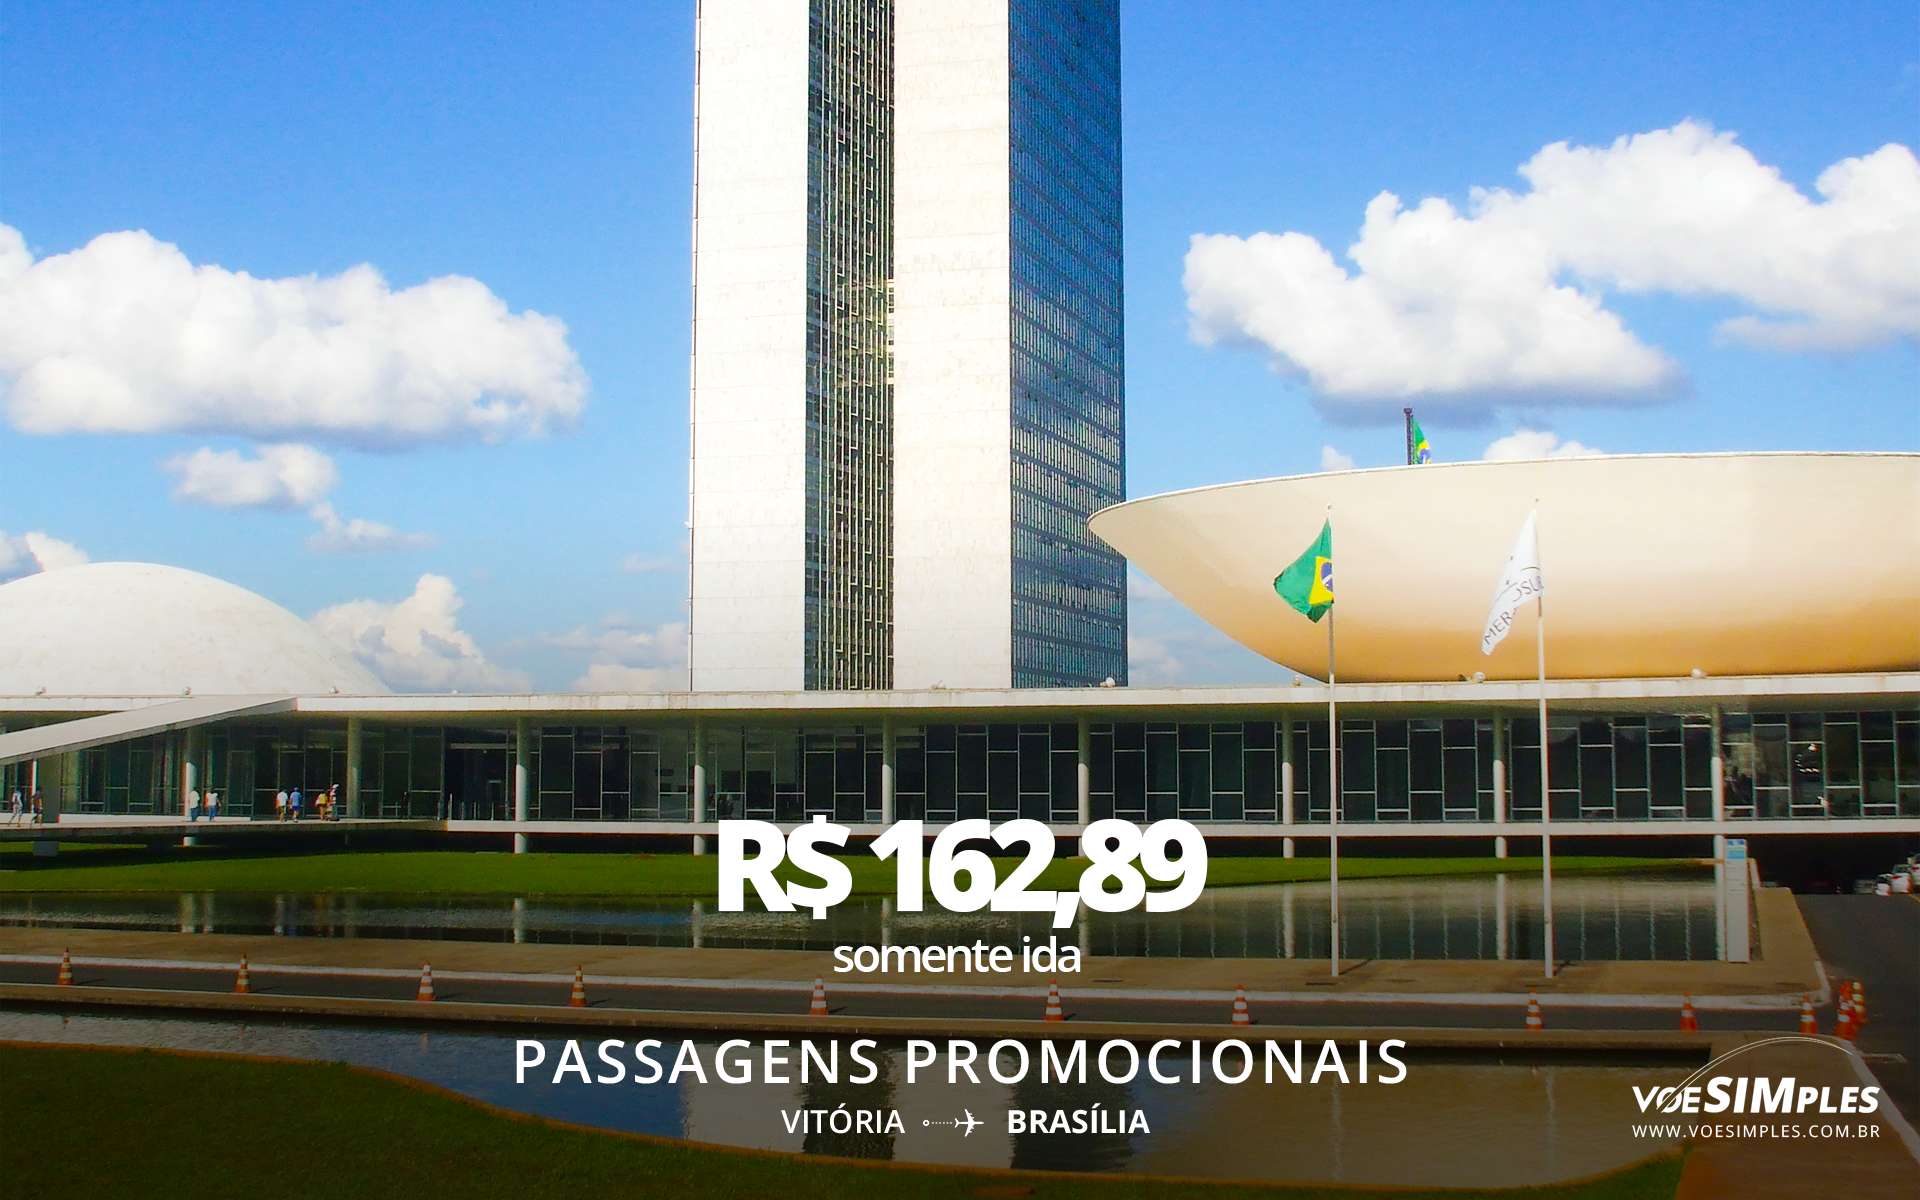 passagem-aerea-promocional-executiva-latam-vitoria-brasilia-brasil-america-sul-voe-simples-promo-sdfull